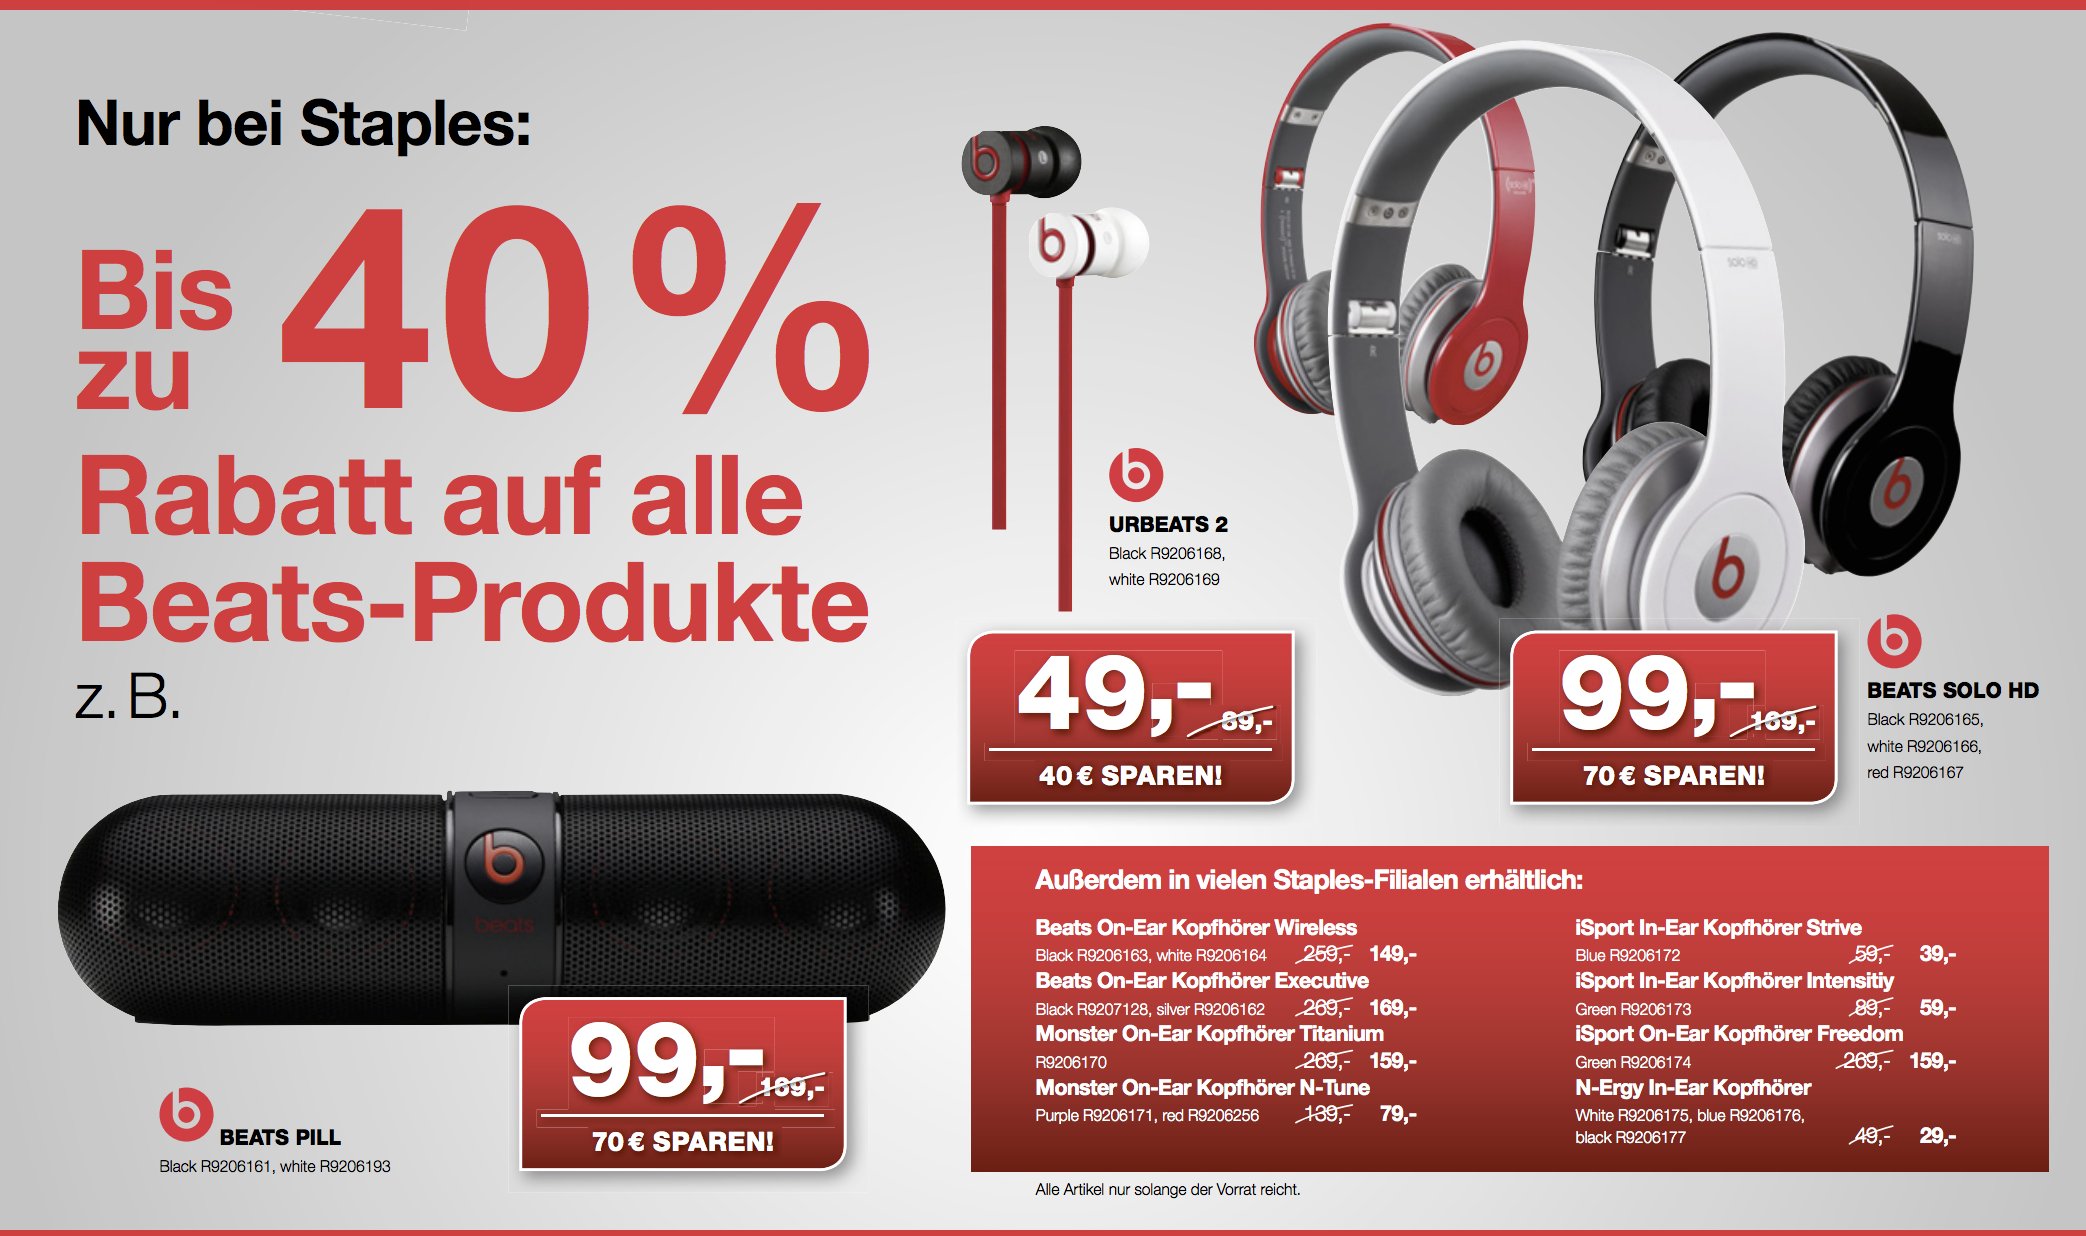 Beats bei Amazon ausverkauft - Staples mit 40 Prozent Rabatt auf alle Beats Produkte. 2